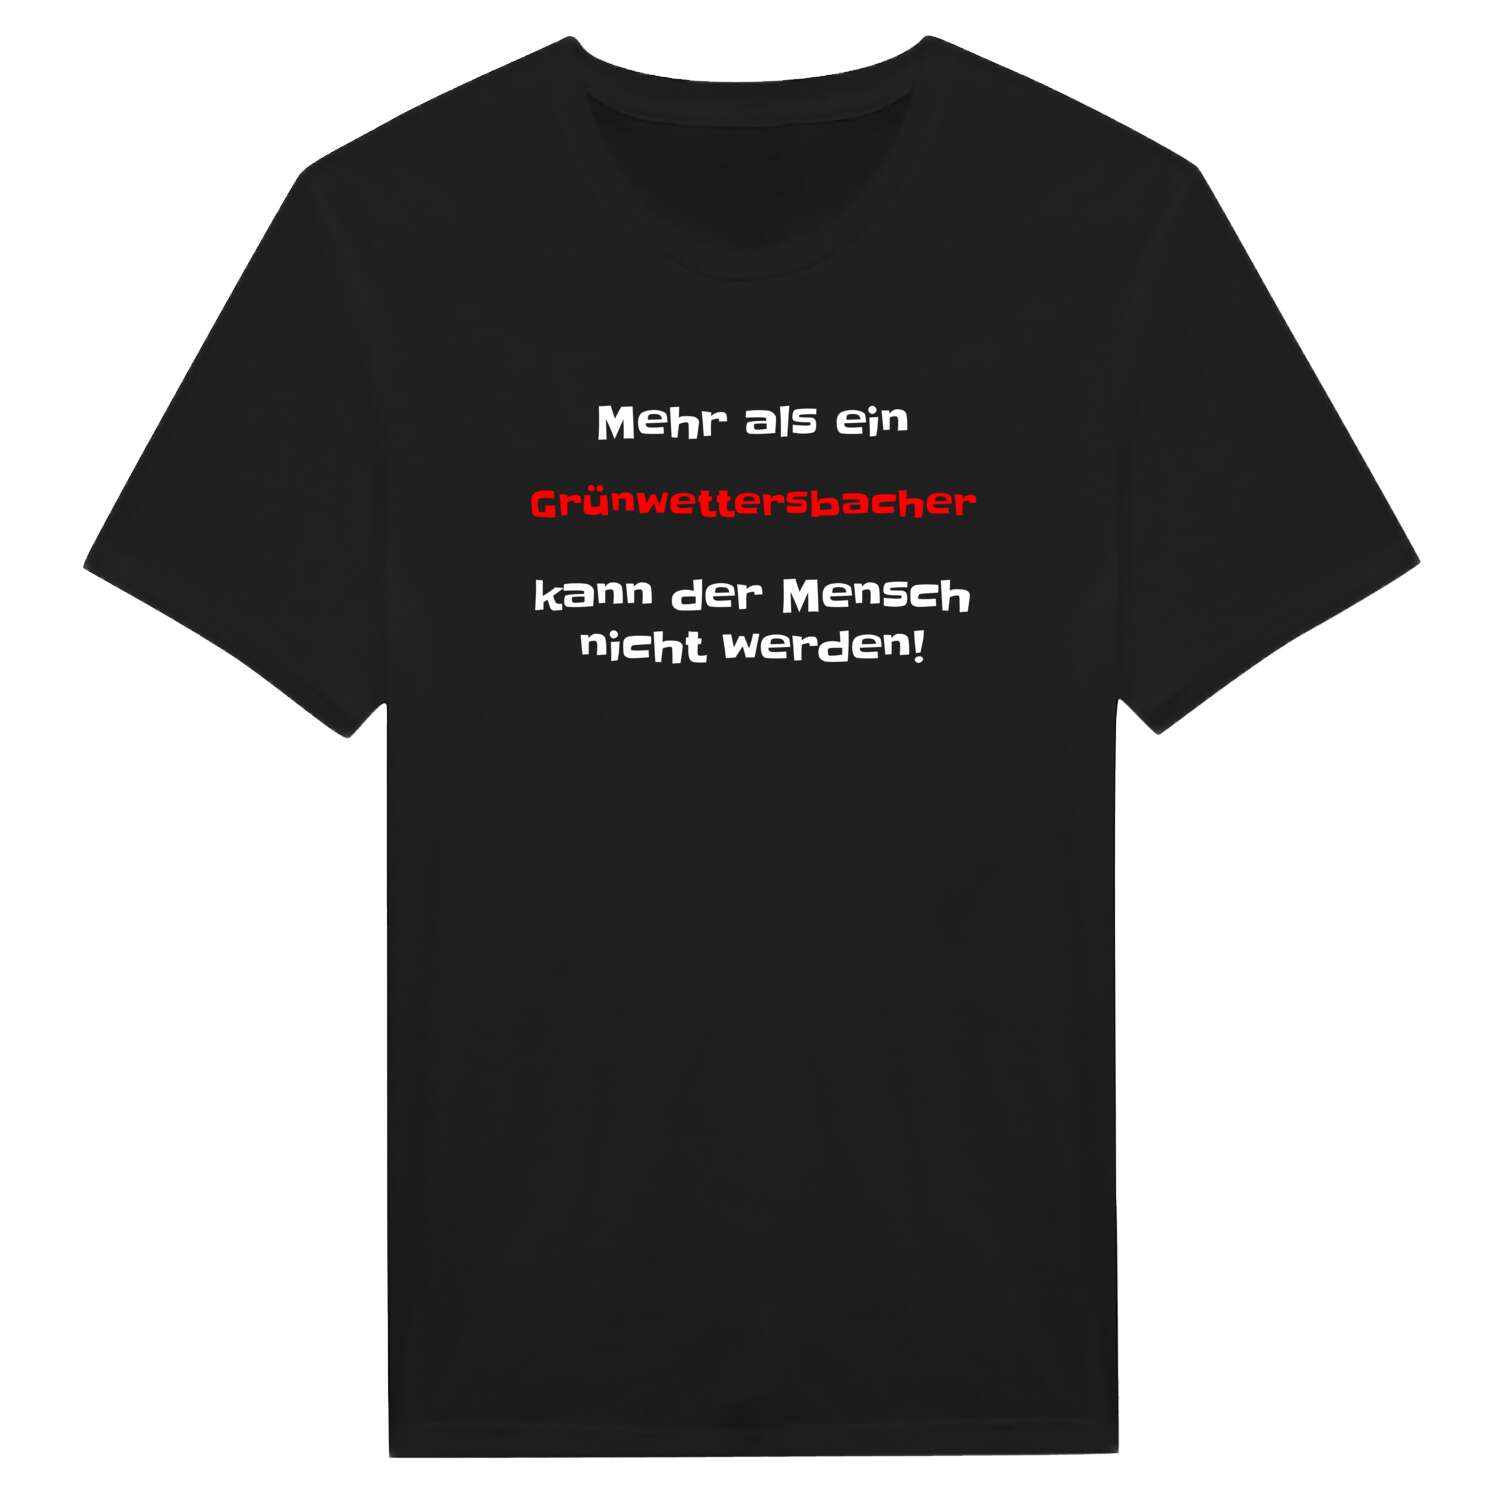 Grünwettersbach T-Shirt »Mehr als ein«